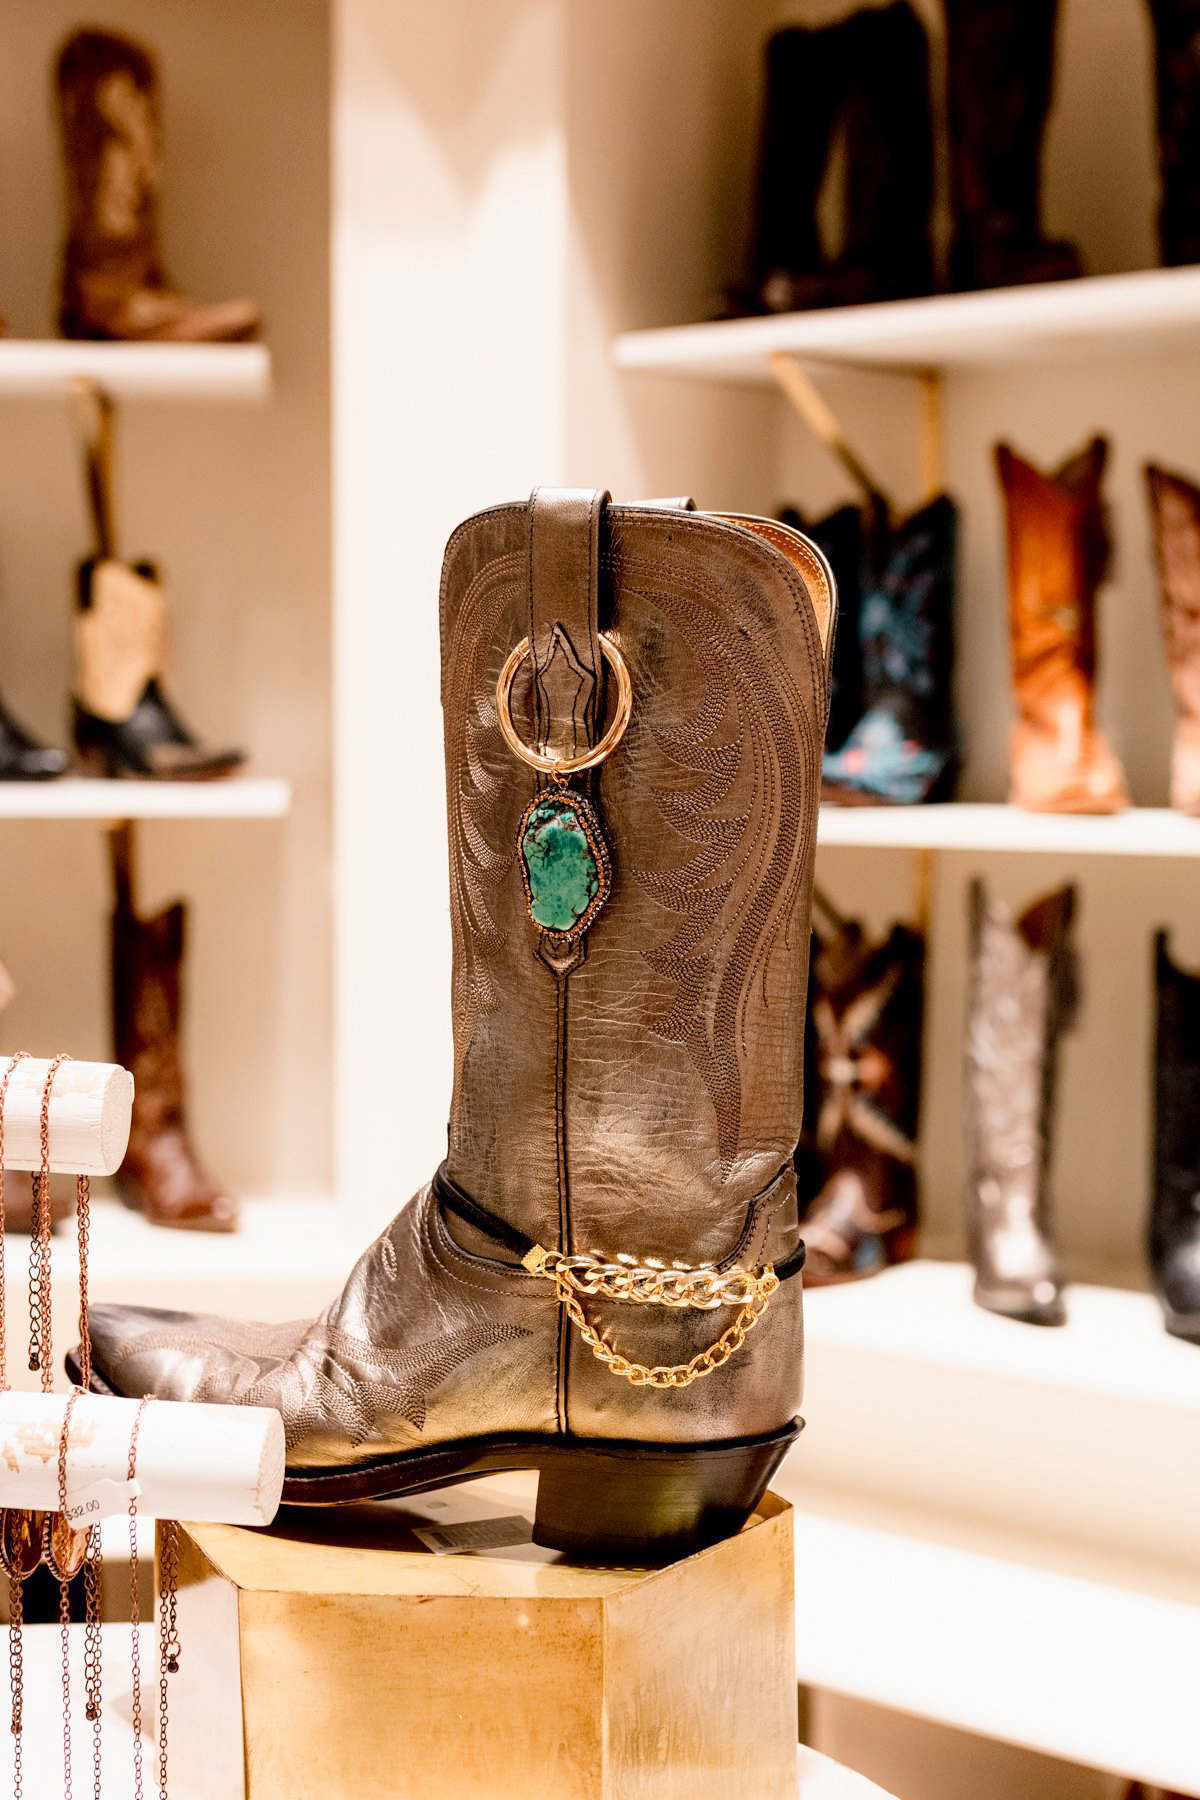 dallas cowboys western boots